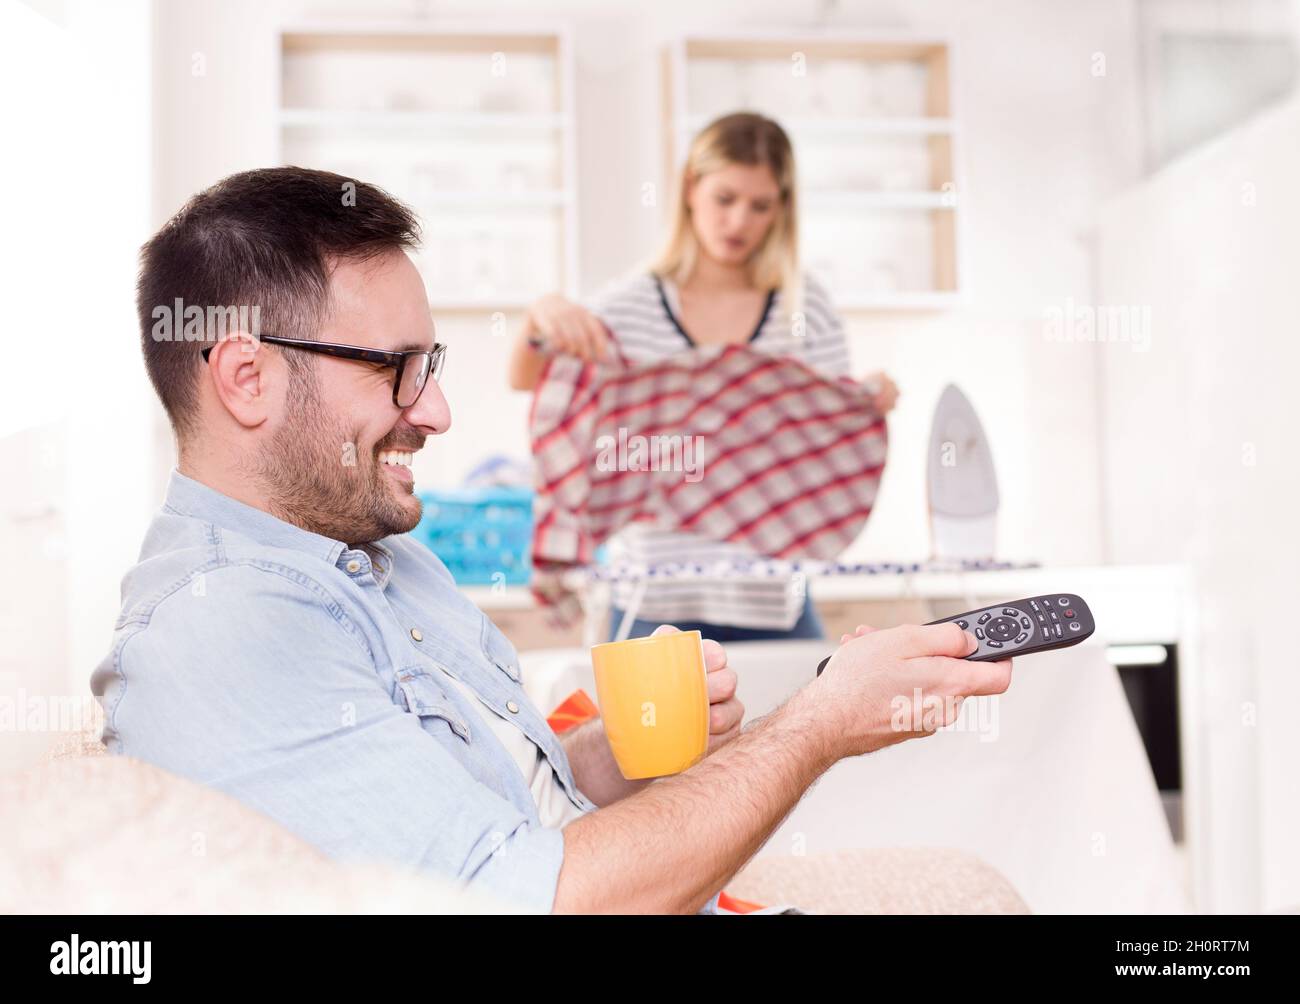 Junger, hübscher Mann, der auf dem Sofa sitzt und die Fernbedienung des fernsehers hält, während seine Frau im Hintergrund bügelt und Aufgaben erledigt Stockfoto